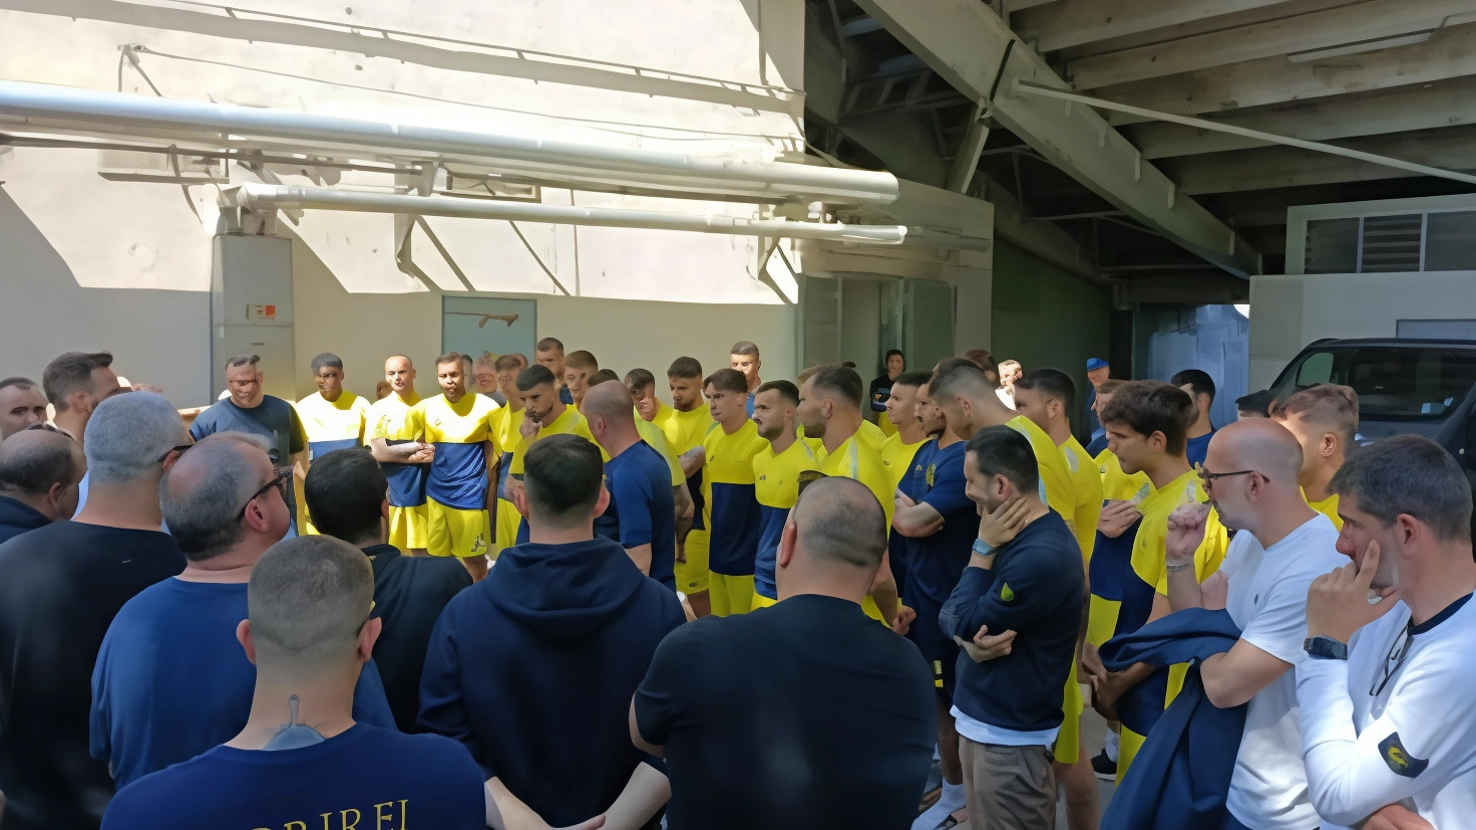 Il nuovo tecnico ha incontrato dirigenza e sostenitori nell’anti stadio, poi ha diretto il suo primo allenamento allo Zelocchi